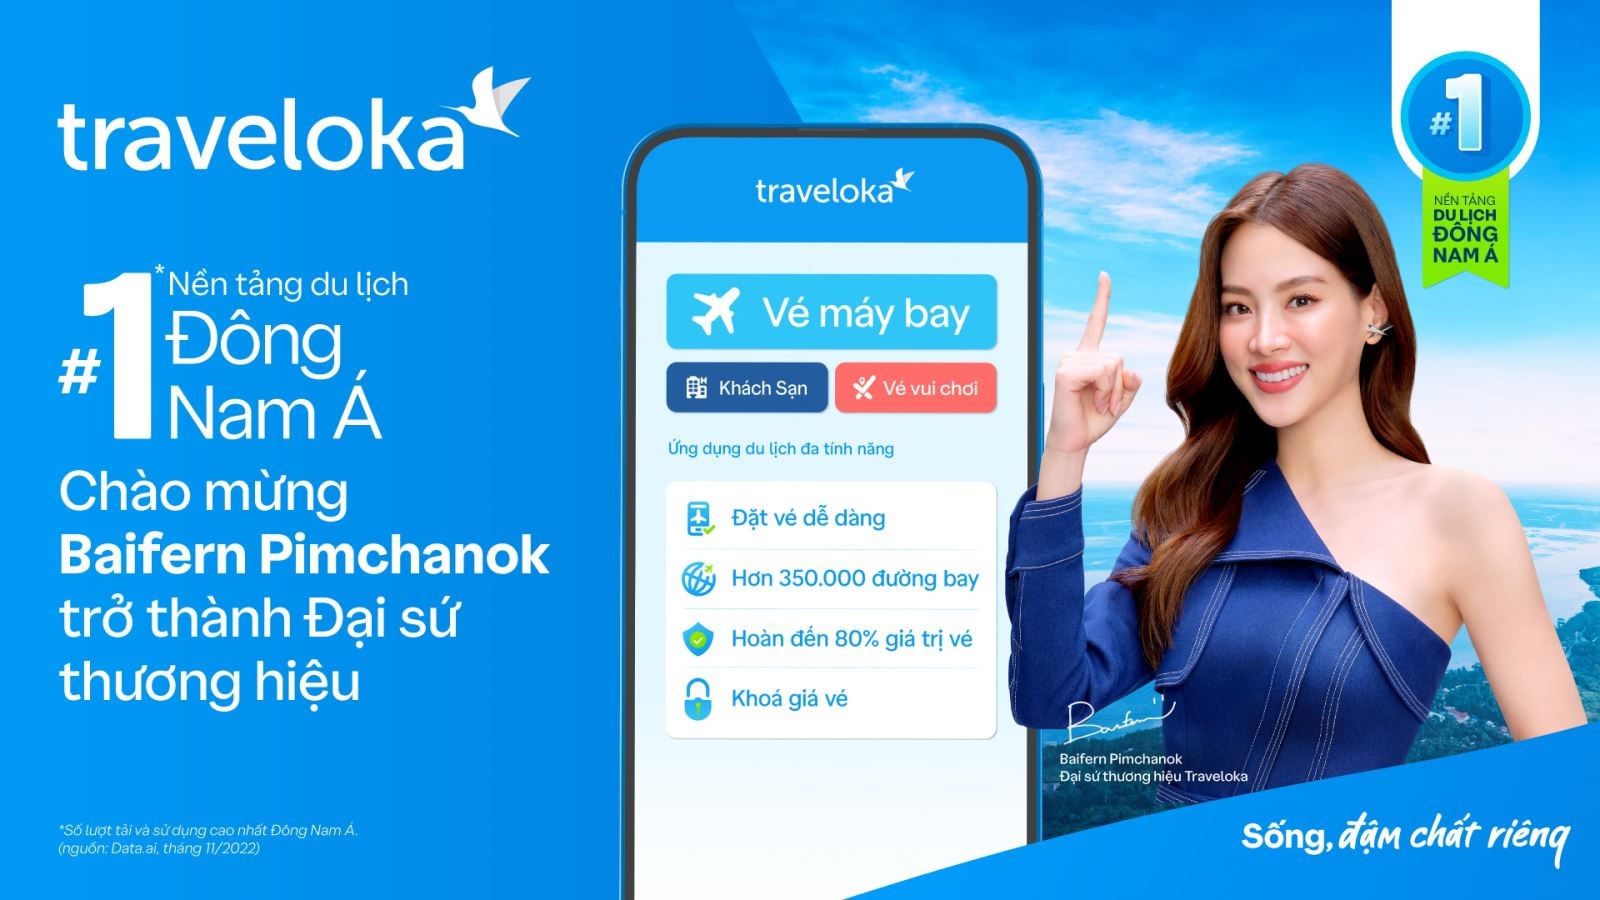 Baifern Pimchanok sẽ là gương mặt đại diện của Traveloka tại Thái Lan và Việt Nam.